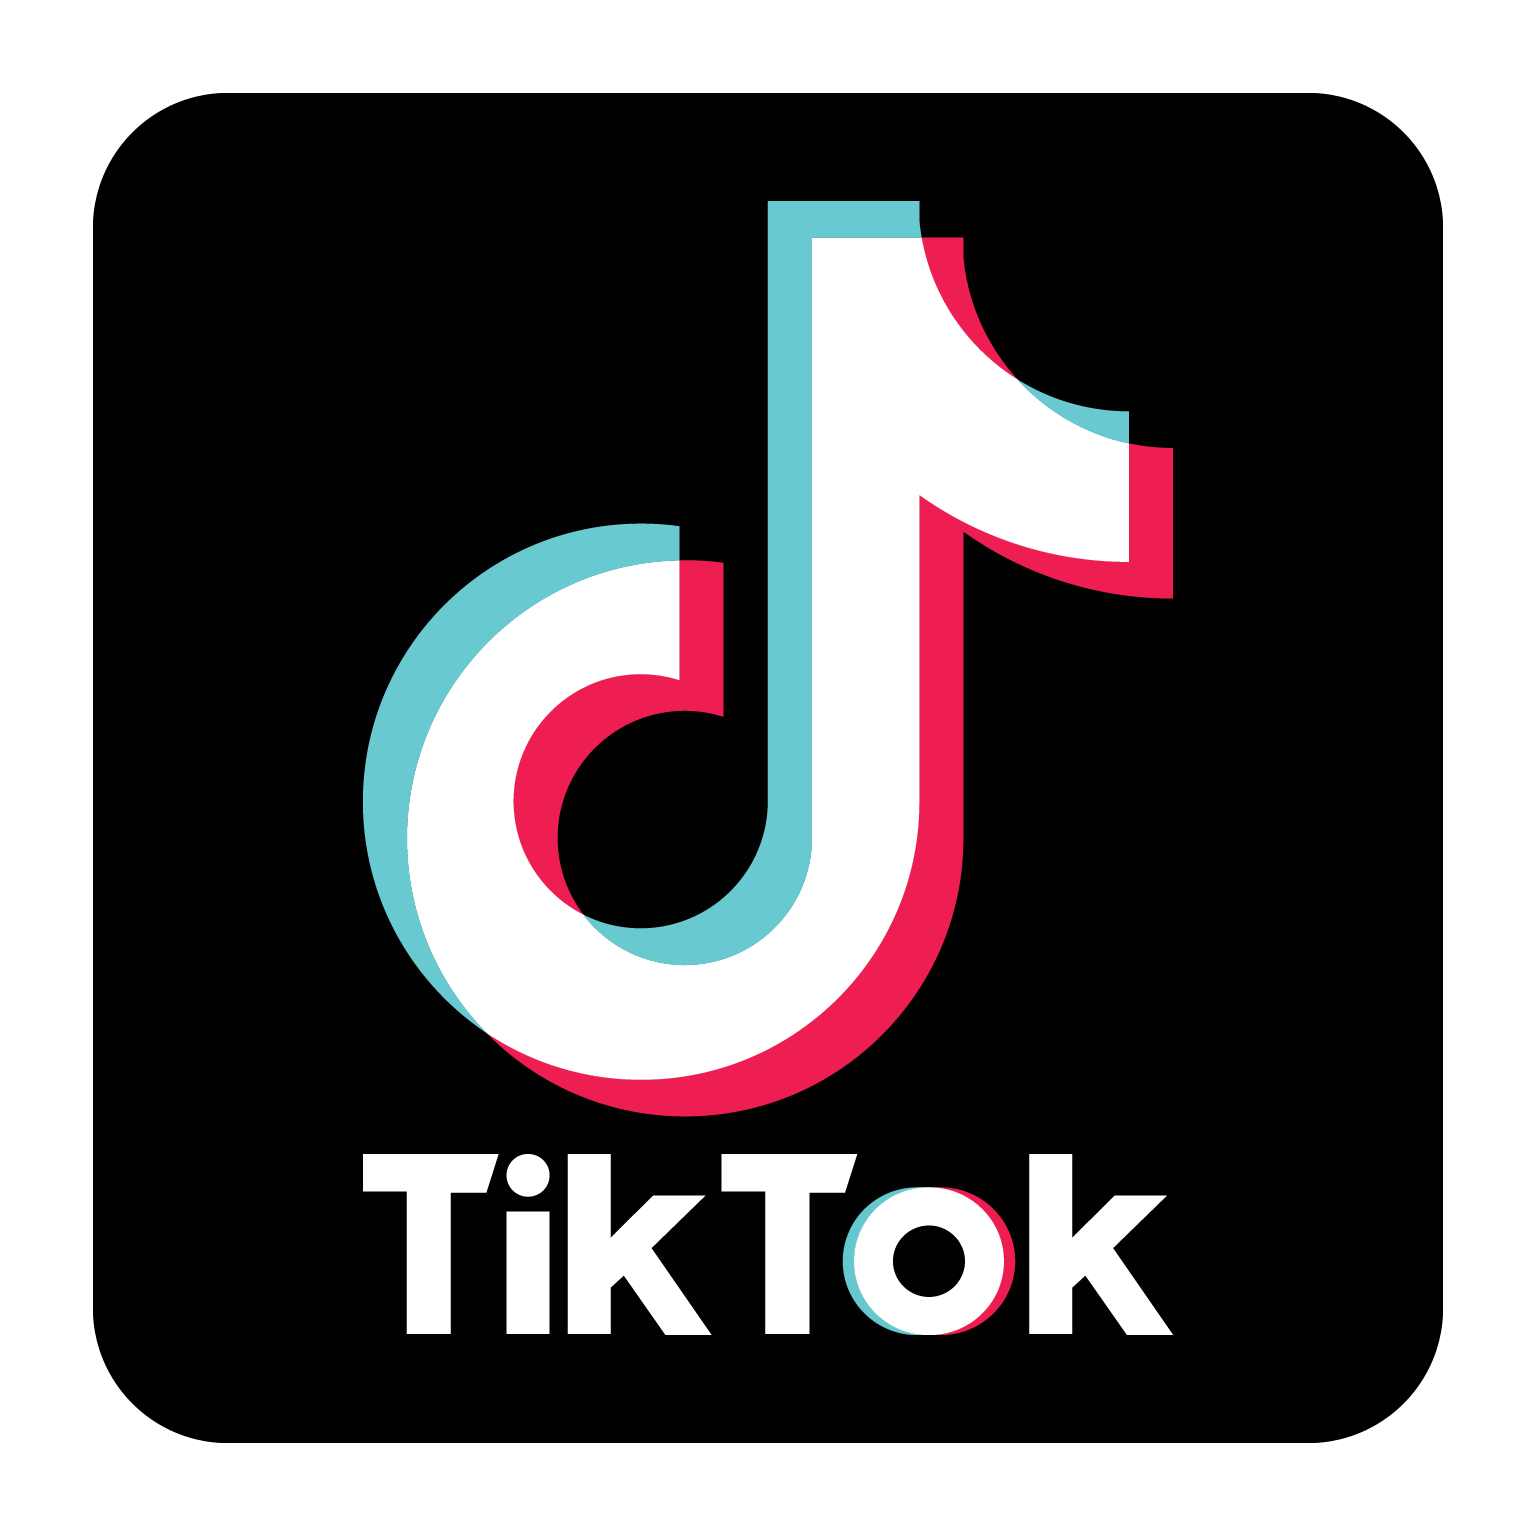 Tiktok Png Tik Tok Logo Png Image Purepng Free Transparent Cc Images Images